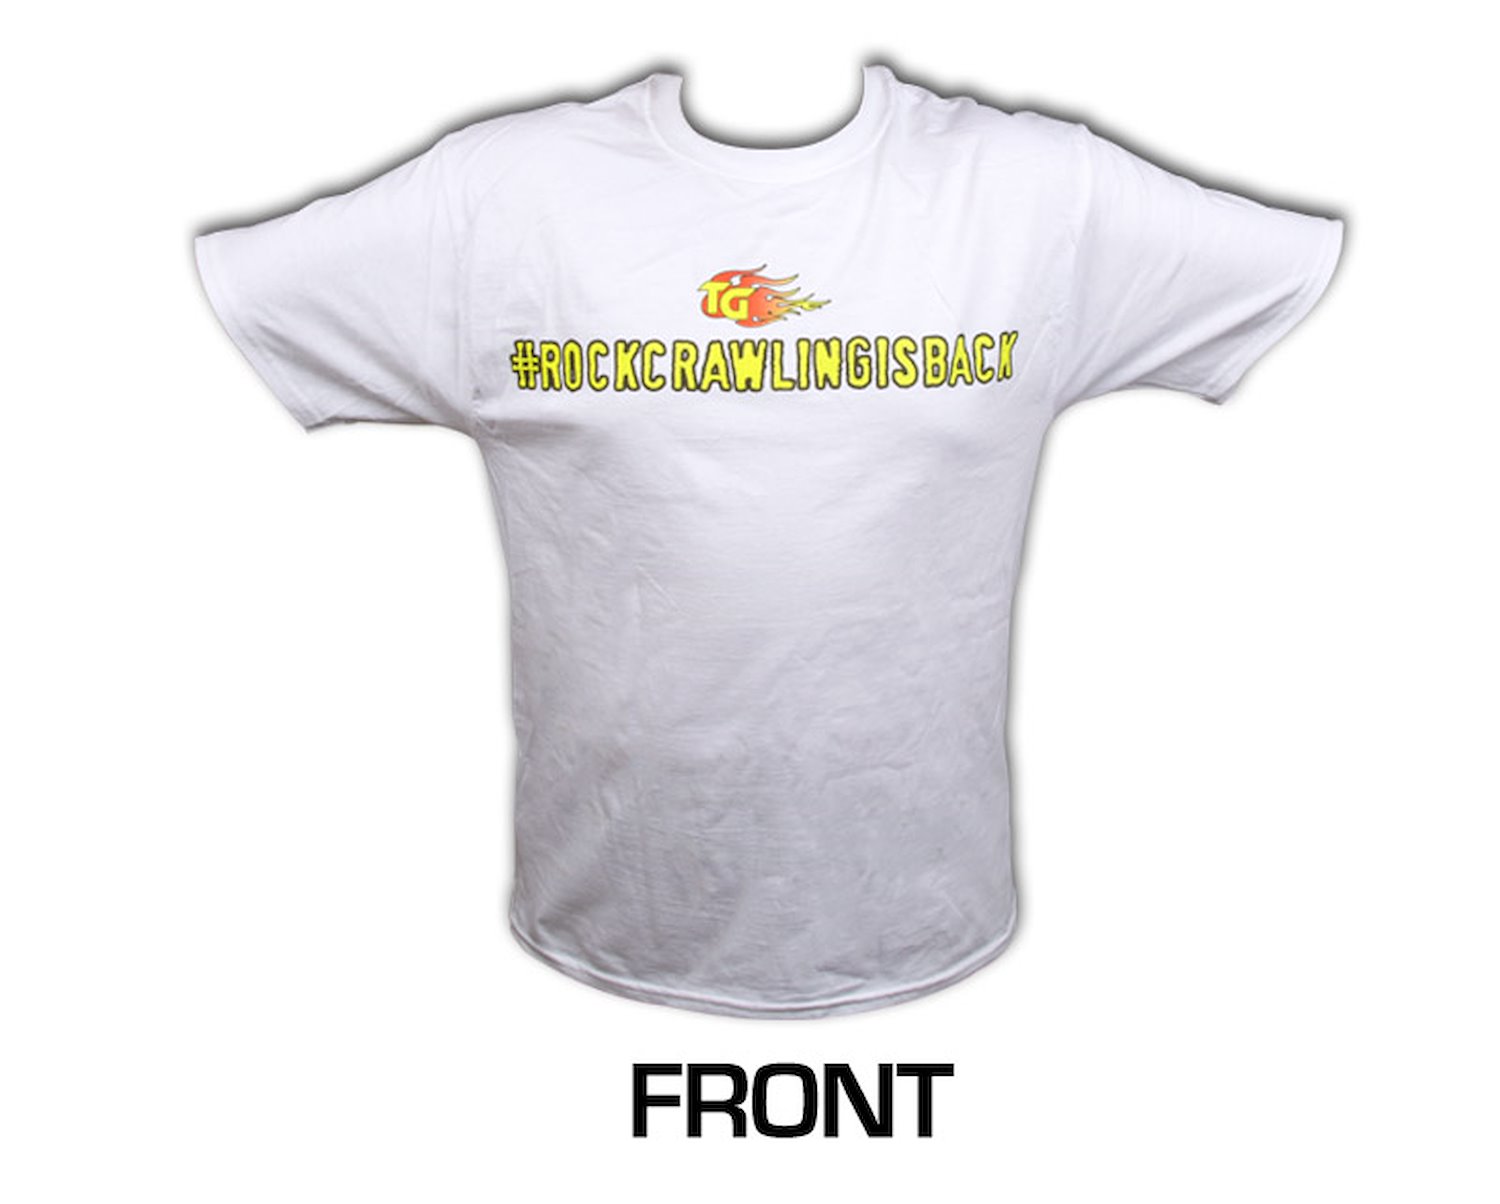 Short Sleeved White Shirt #rockcrawlingisback XXX-Large